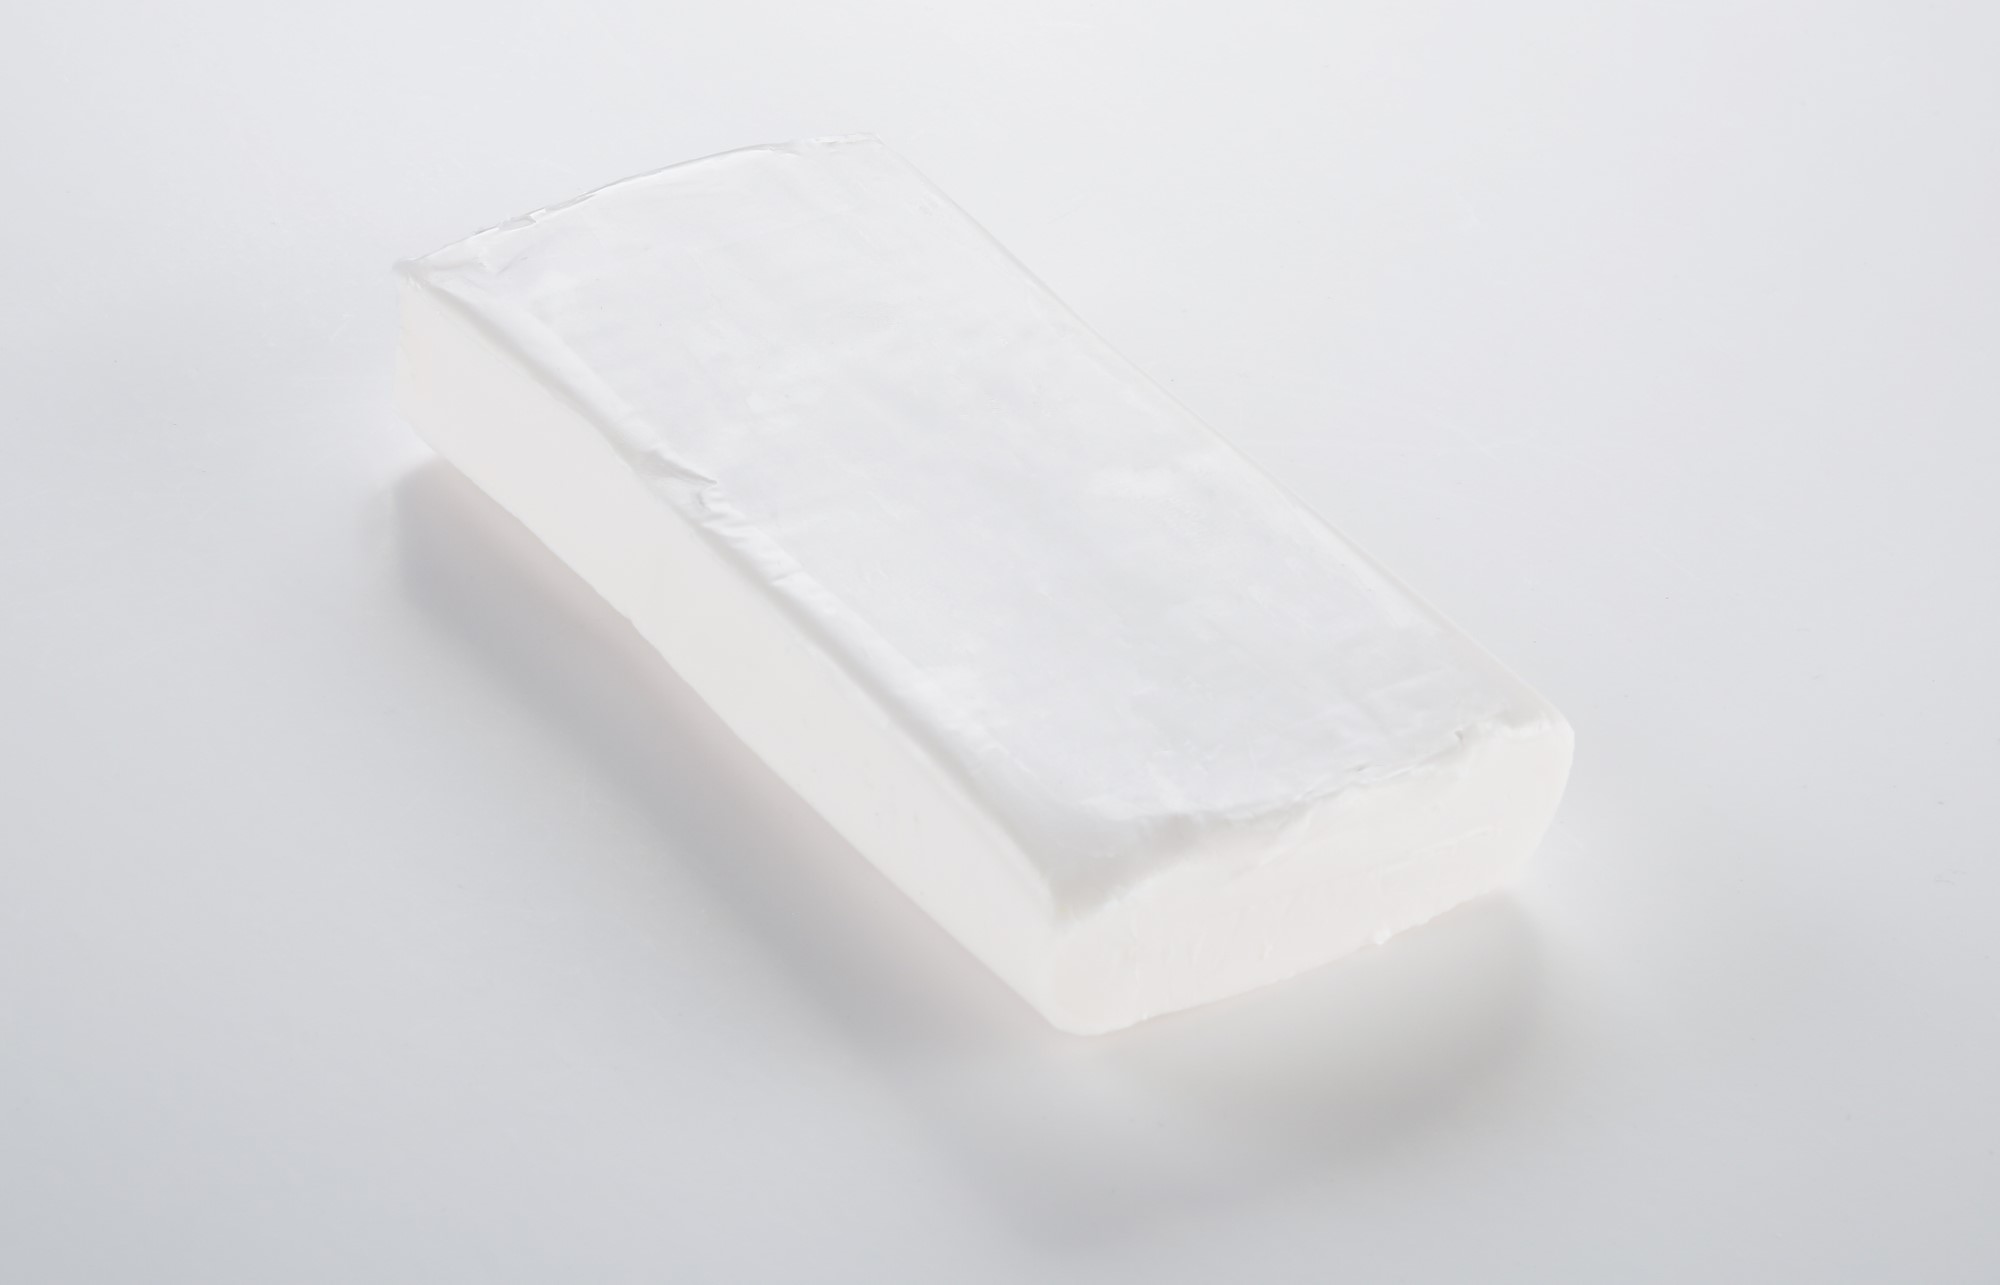 Arcilla polimérica Cernit - translúcido blanco Translucent 500g